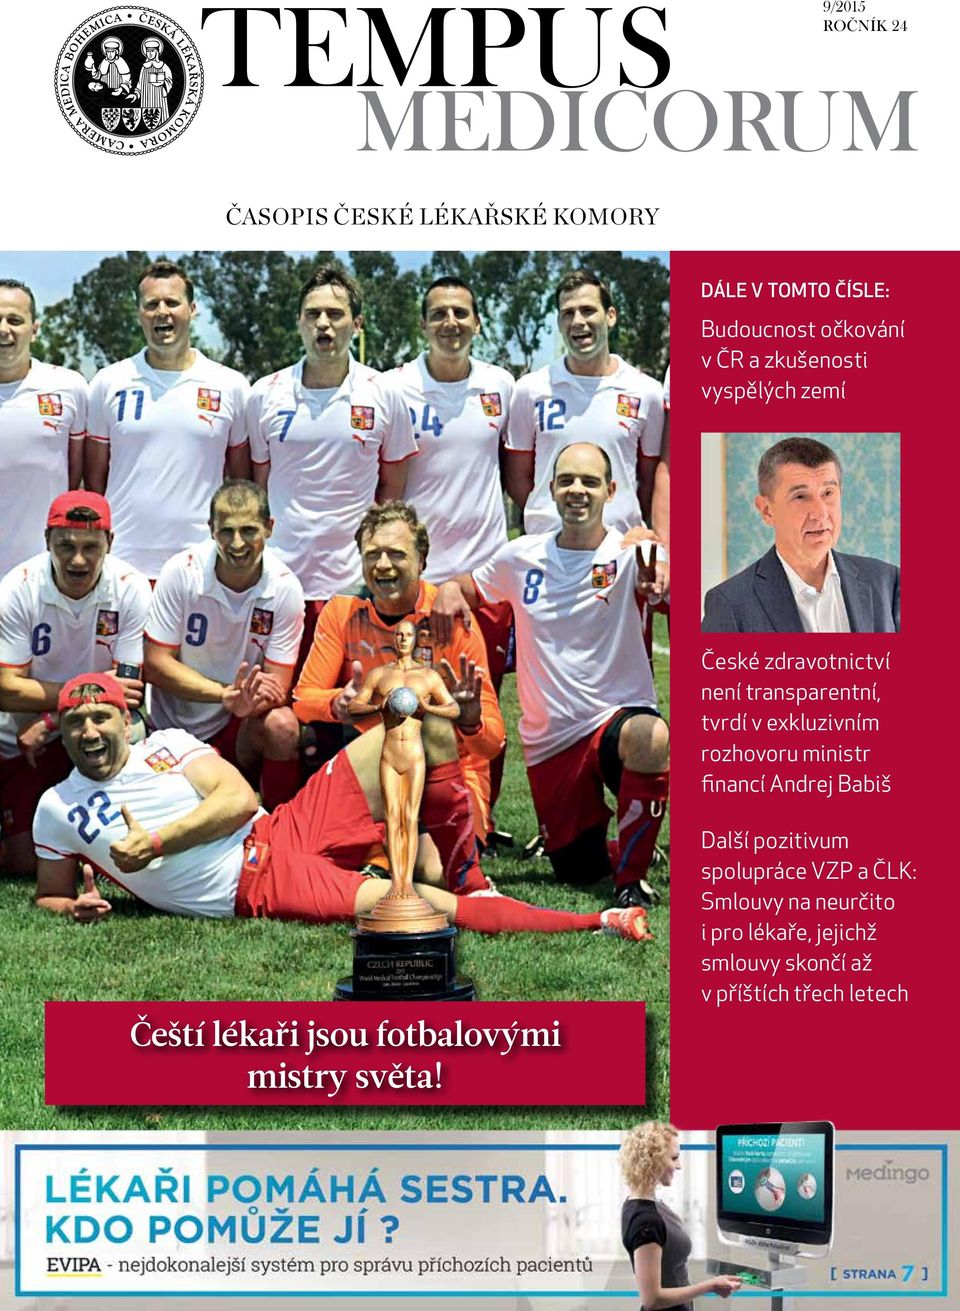 exkluzivním rozhovoru ministr financí Andrej Babiš Čeští lékaři jsou fotbalovými mistry světa!